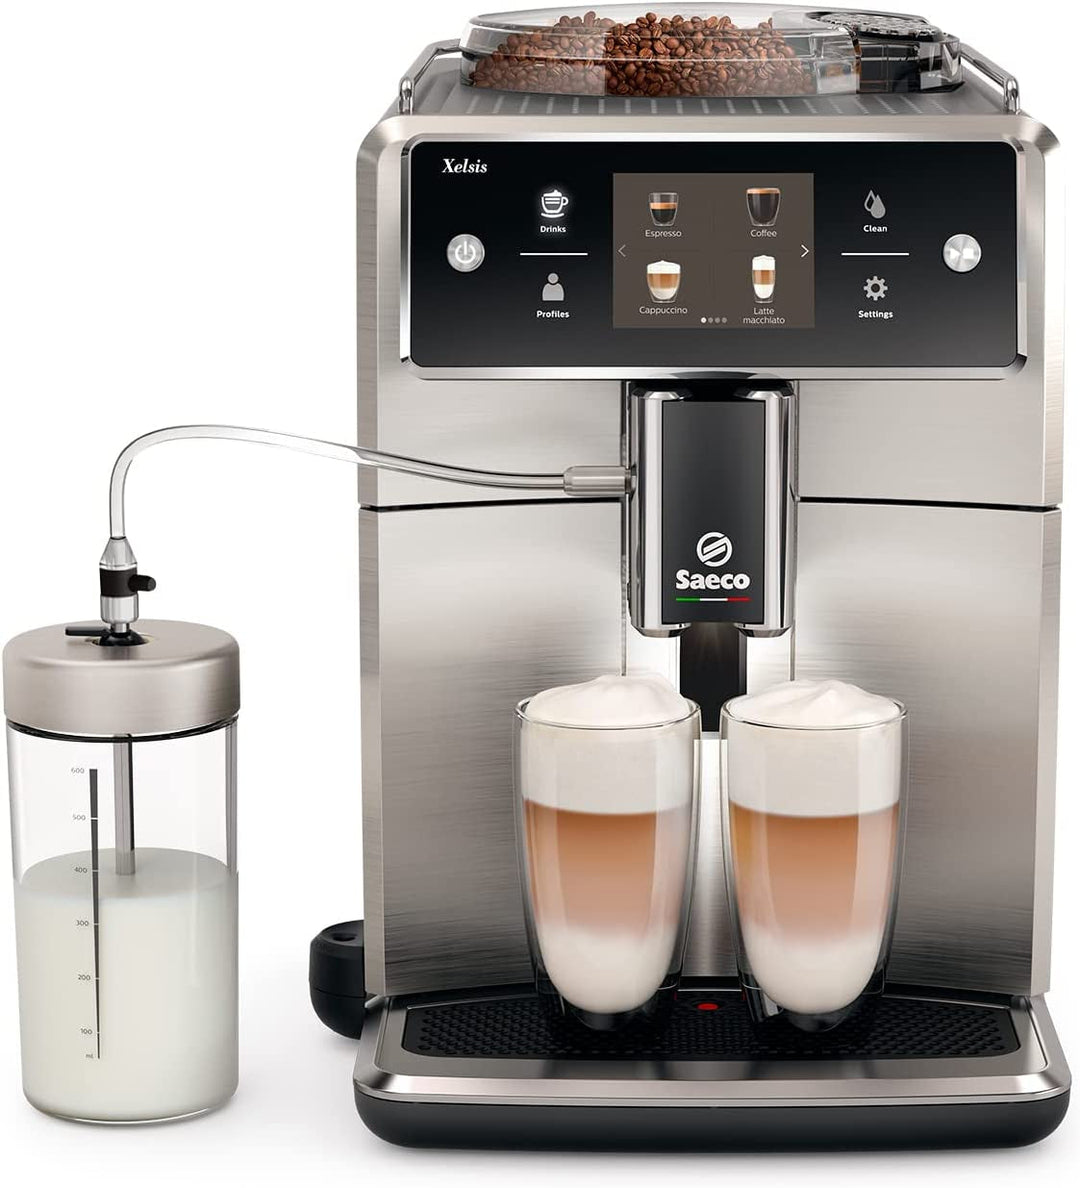 PHILIPS Saeco Xelsis Super Automatic Espresso Machine